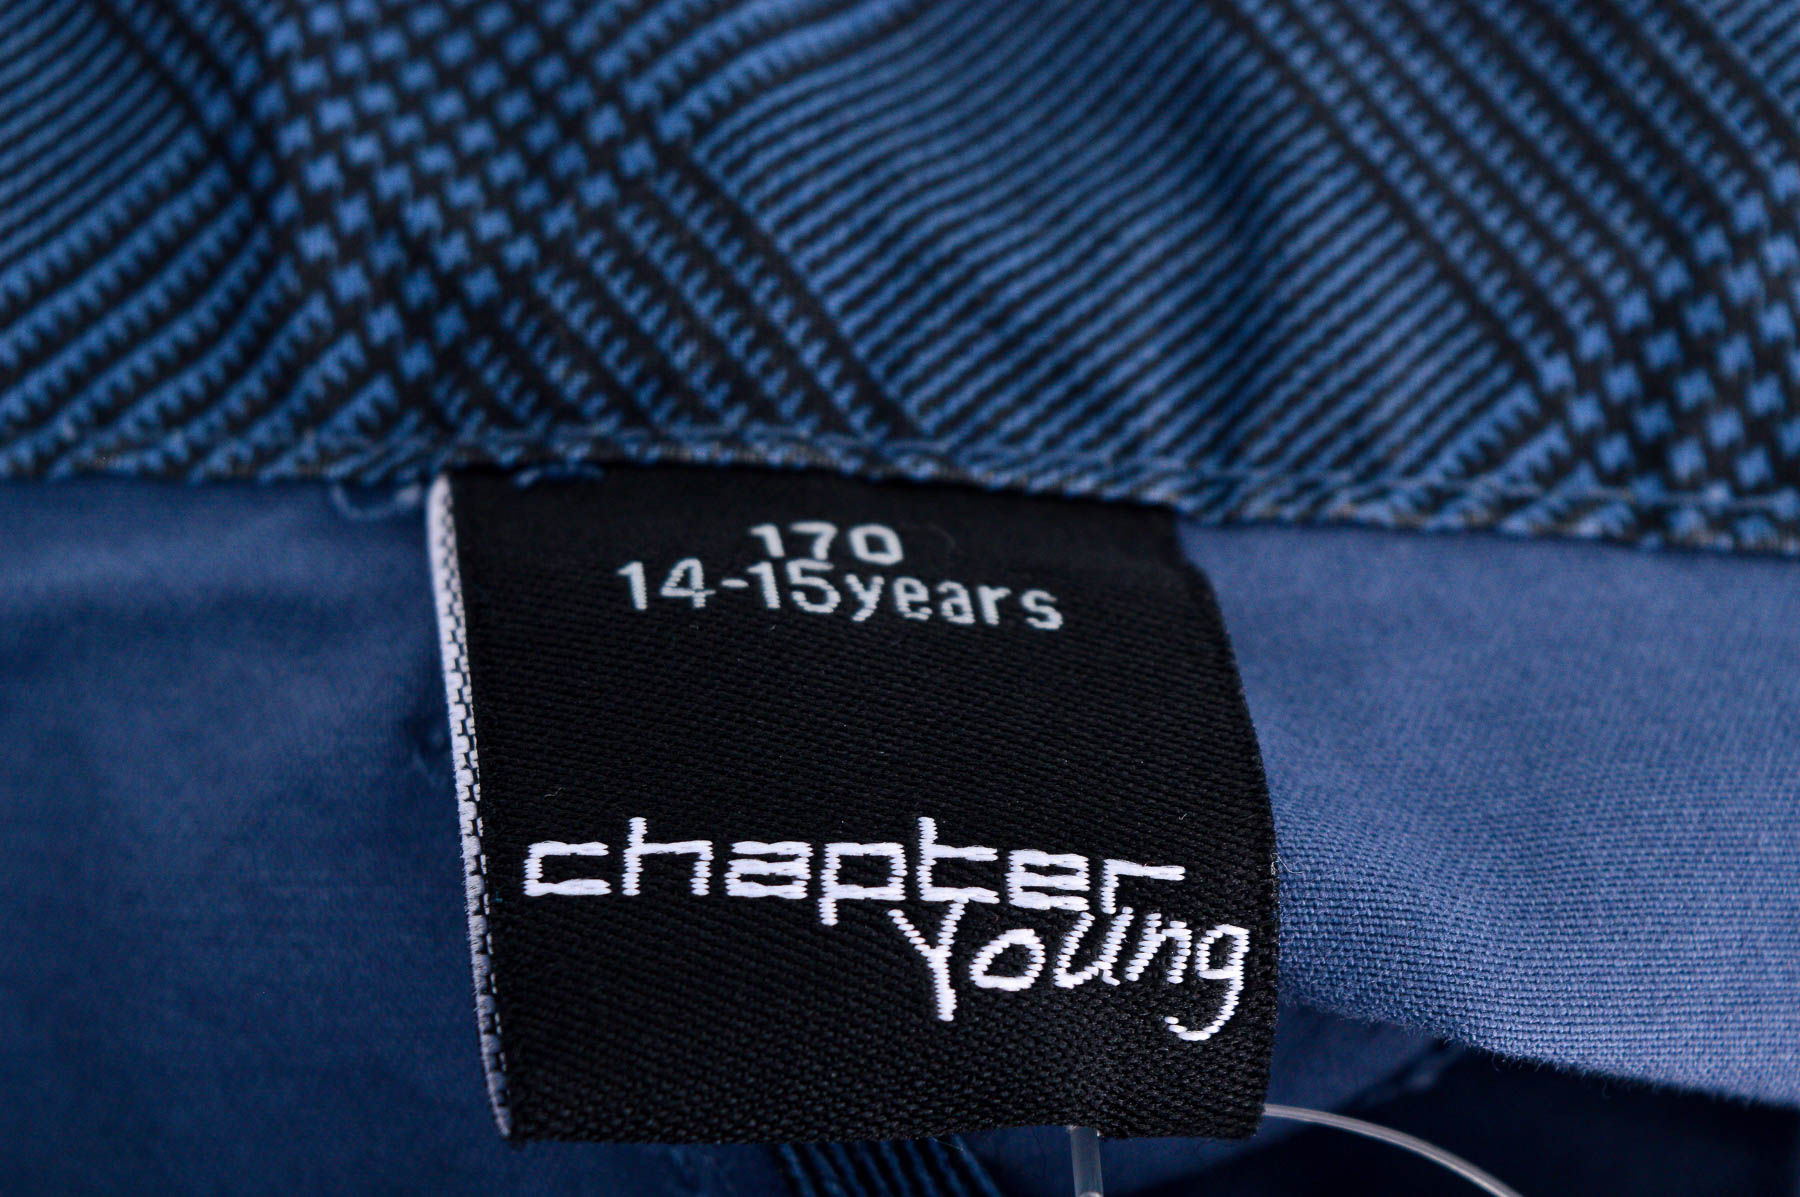 Къси панталони за момче - Chapter Young - 2